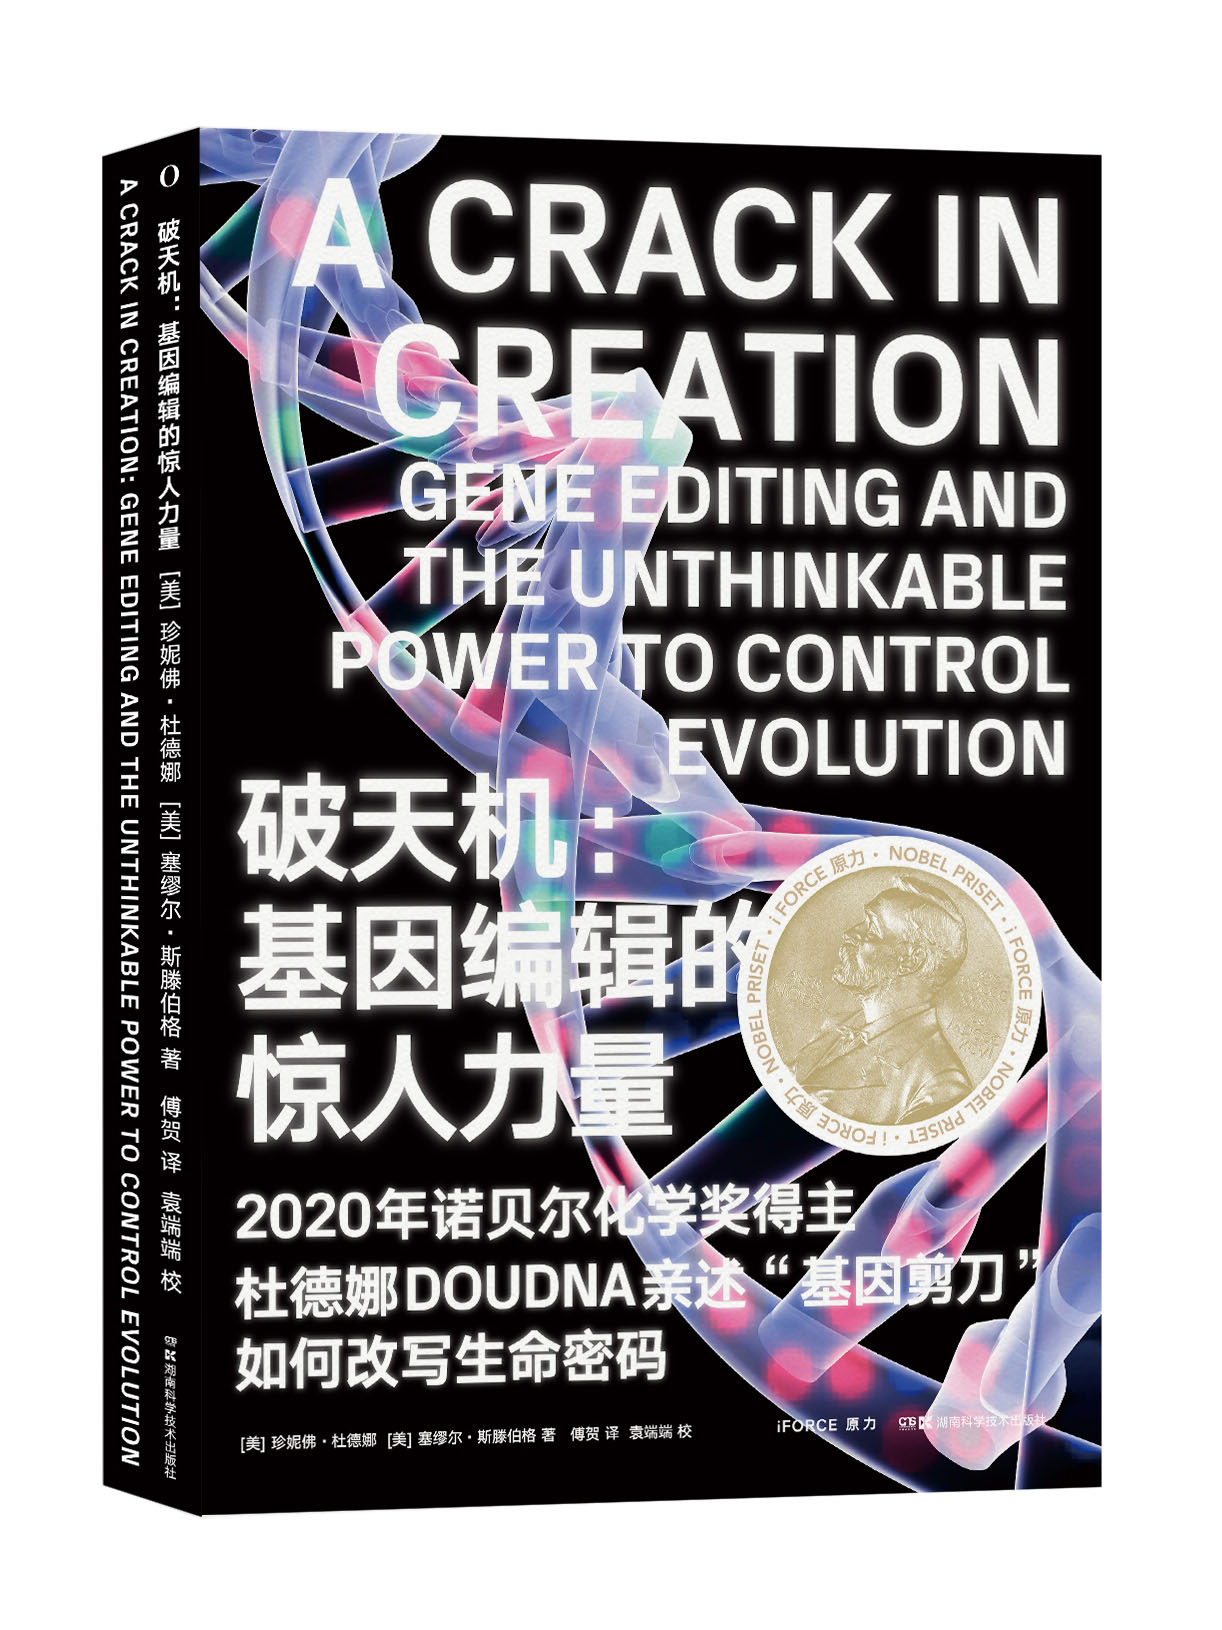 2020年诺贝尔化学奖获奖者詹妮弗·杜德纳新书《破天机：基因编辑的惊人力量》